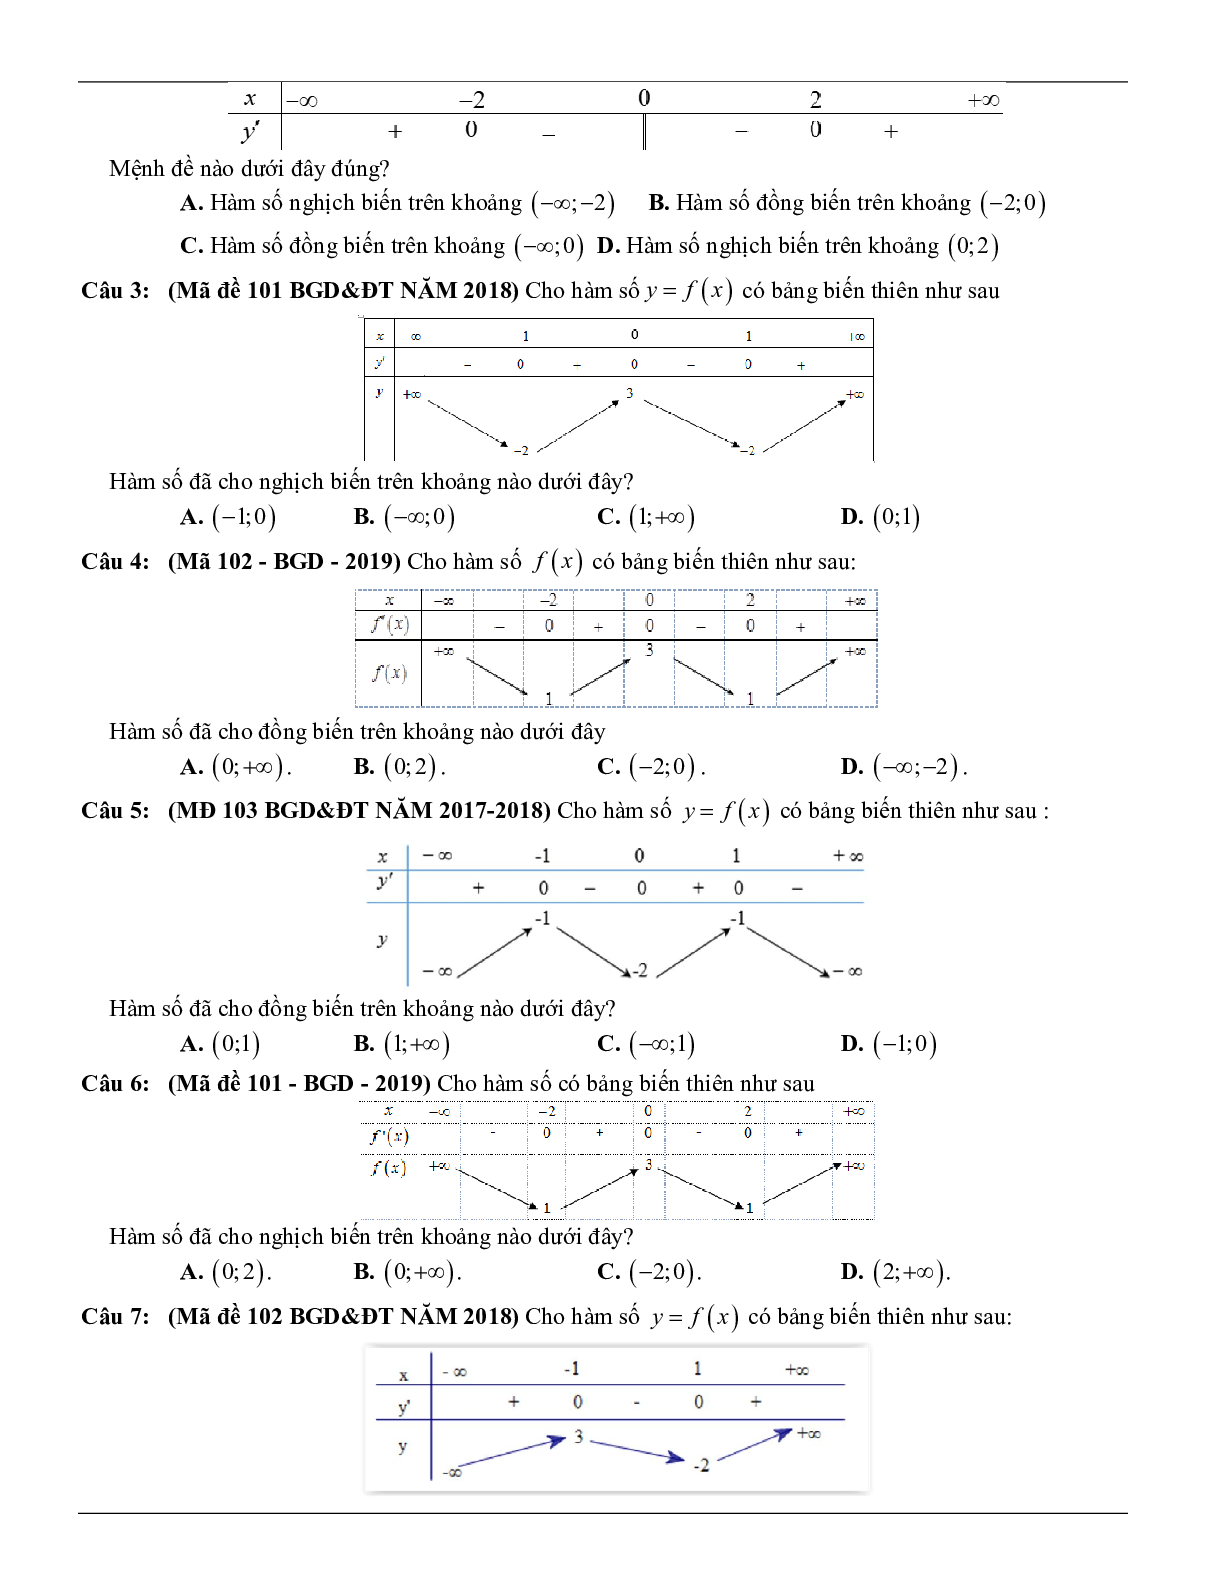 Các dạng toán về tính đơn điệu của hàm số thường gặp trong kỳ thi THPT Quốc gia (trang 2)